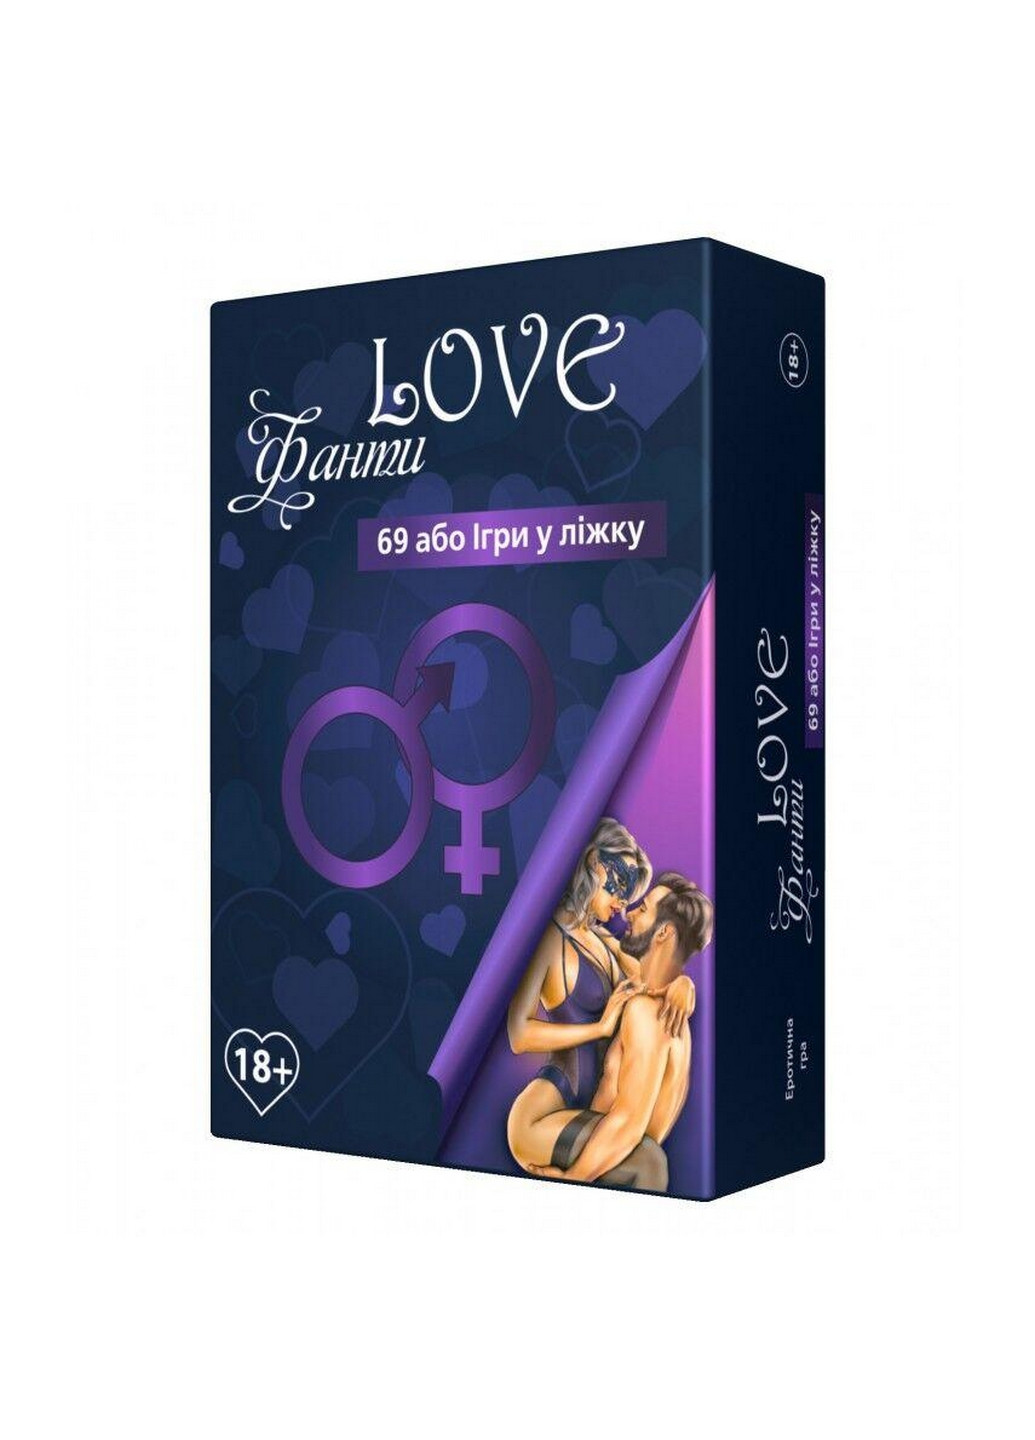 Эротическая игра «LOVE Фанты: 69 или игра в постели» (UA) 18+ Flixplay (260532490)